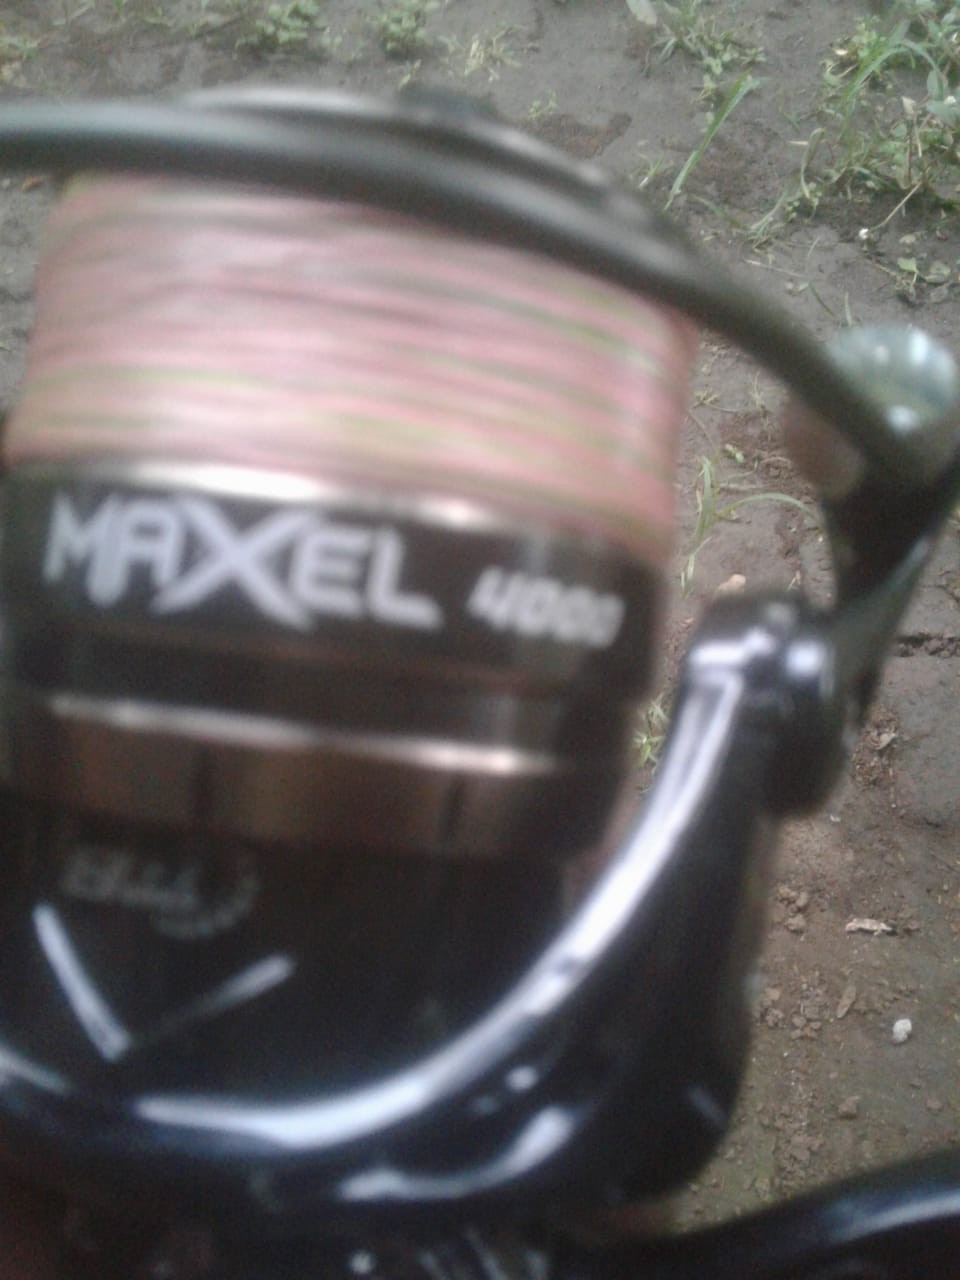 Reel Harrow Maxel Reel Pancing Spinning Murah Power Handle